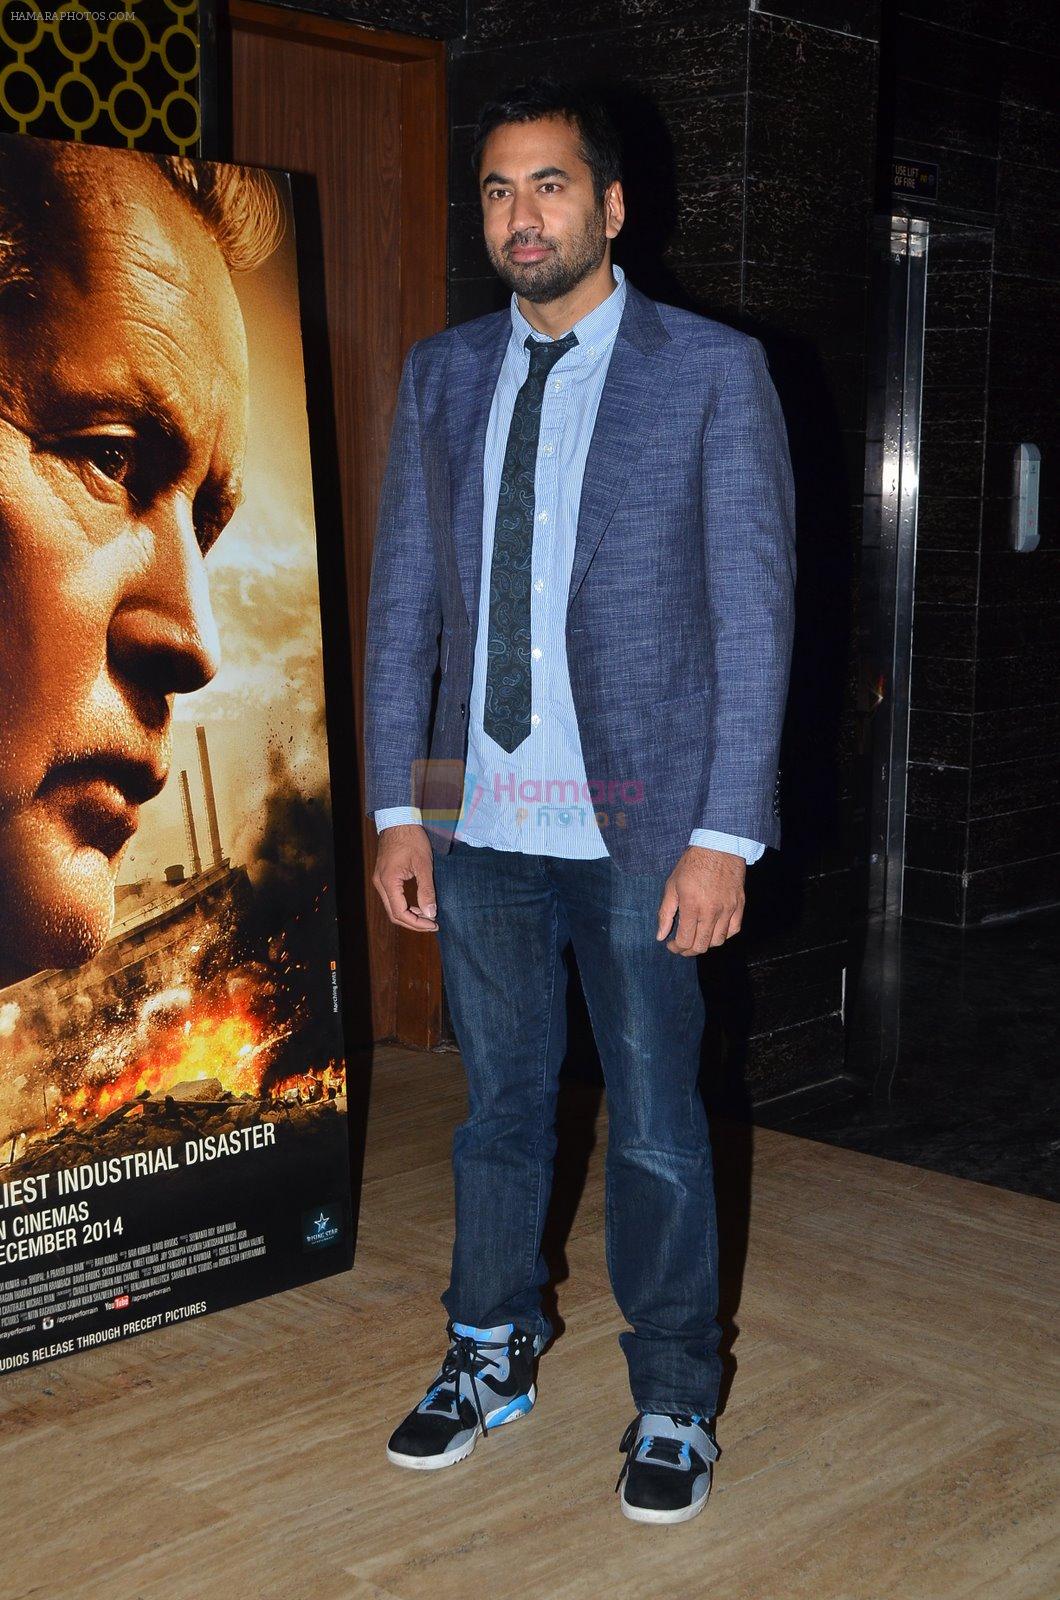 Kal Penn at Bhopal film premiere in Mumbai on 4th Dec 2014